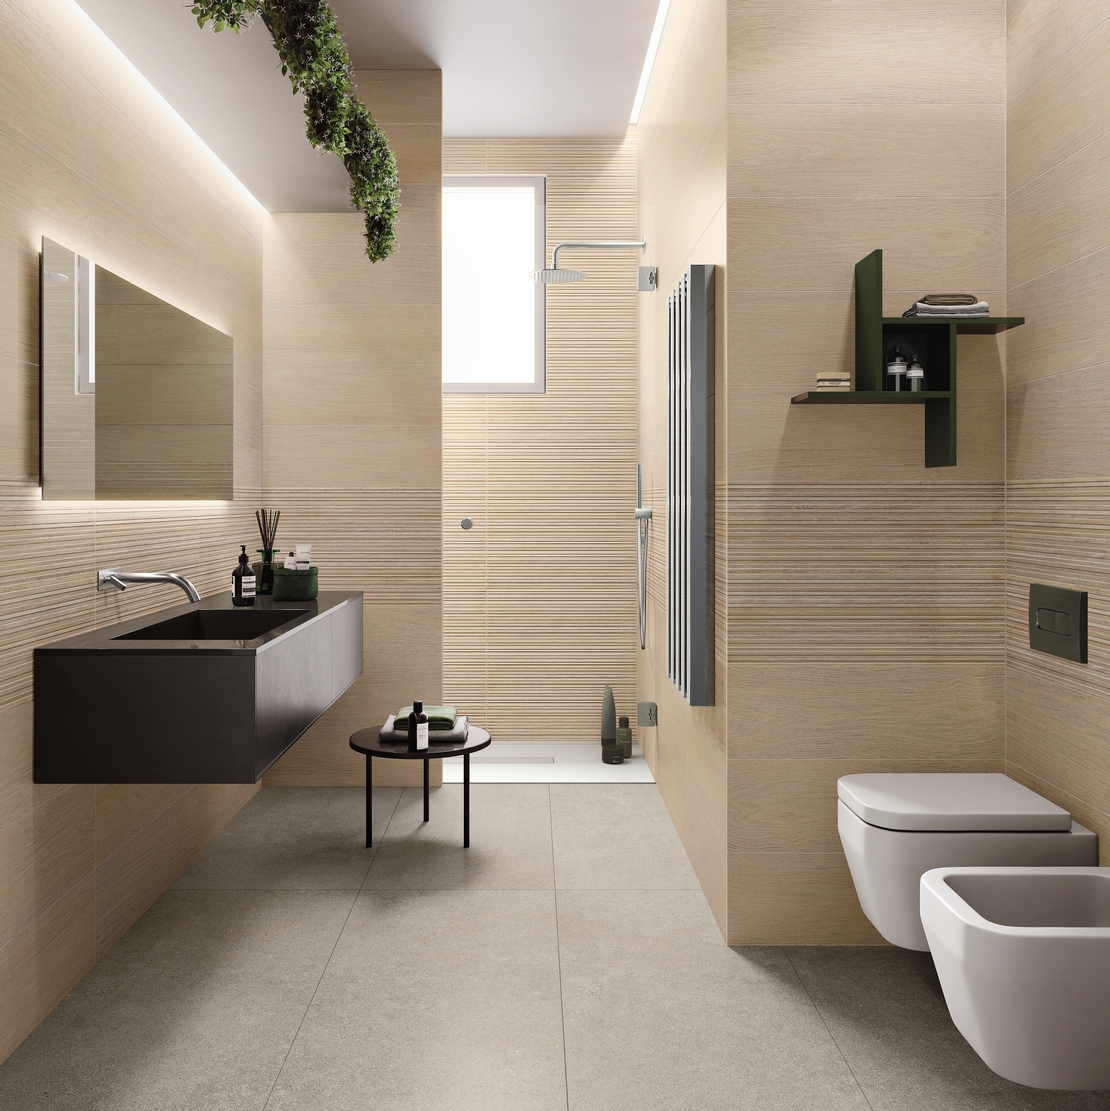 Salle de bains moderne, en longueur, avec douche. Effet bois et béton en beige et gris. - Inspirations Iperceramica